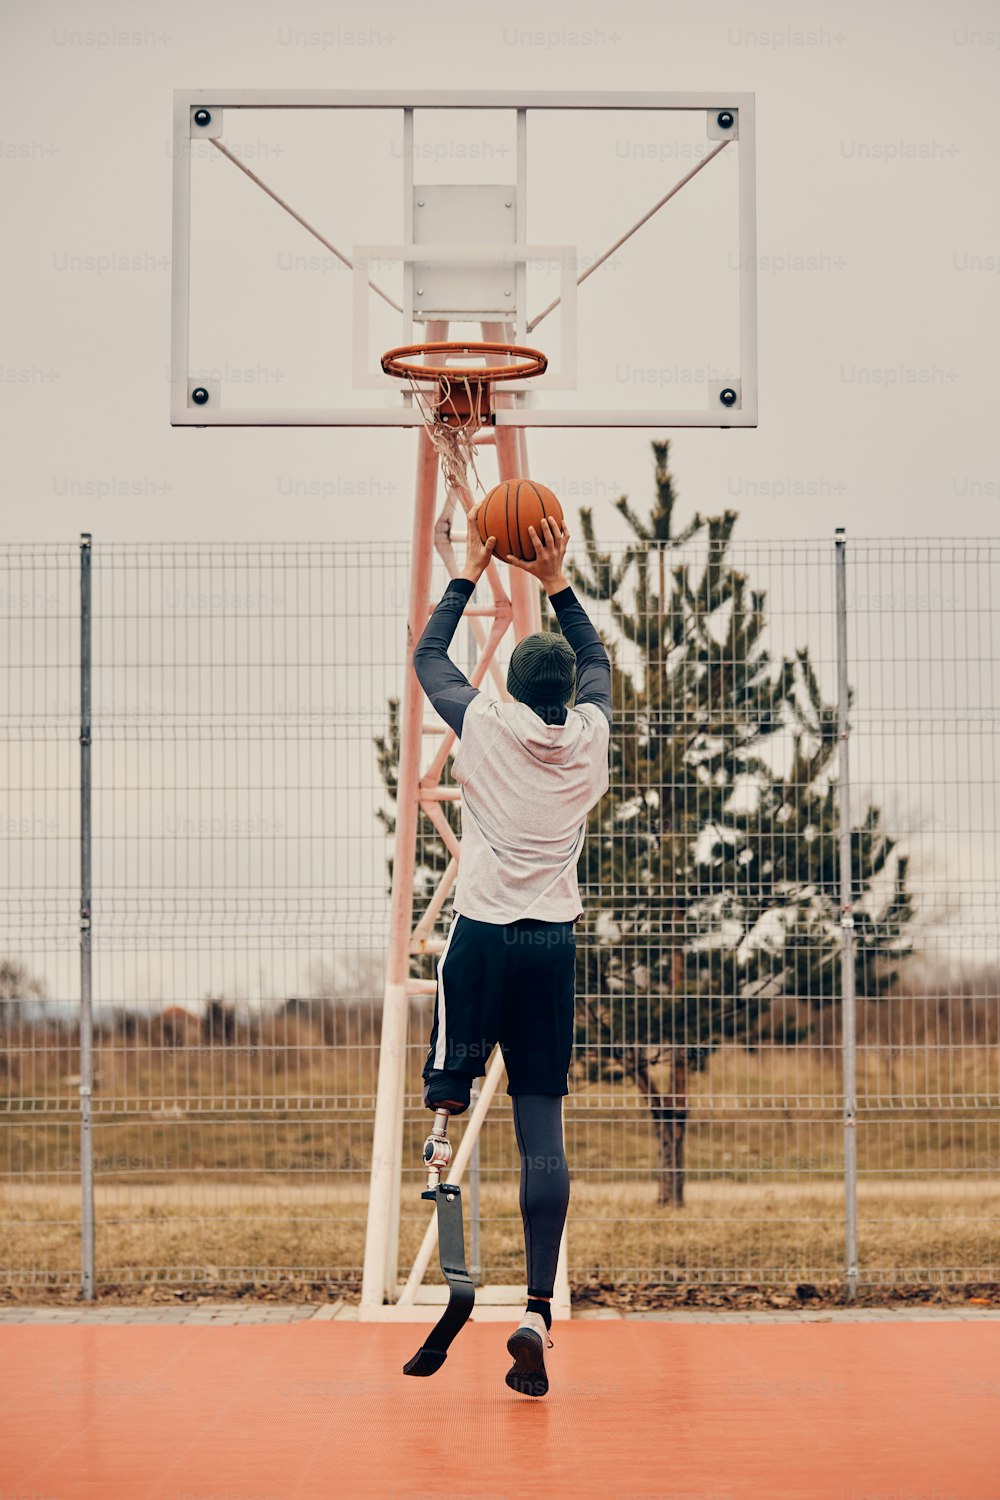 Vista trasera de un jugador de baloncesto con una pierna protésica tomando un tiro mientras practica en una cancha deportiva al aire libre.